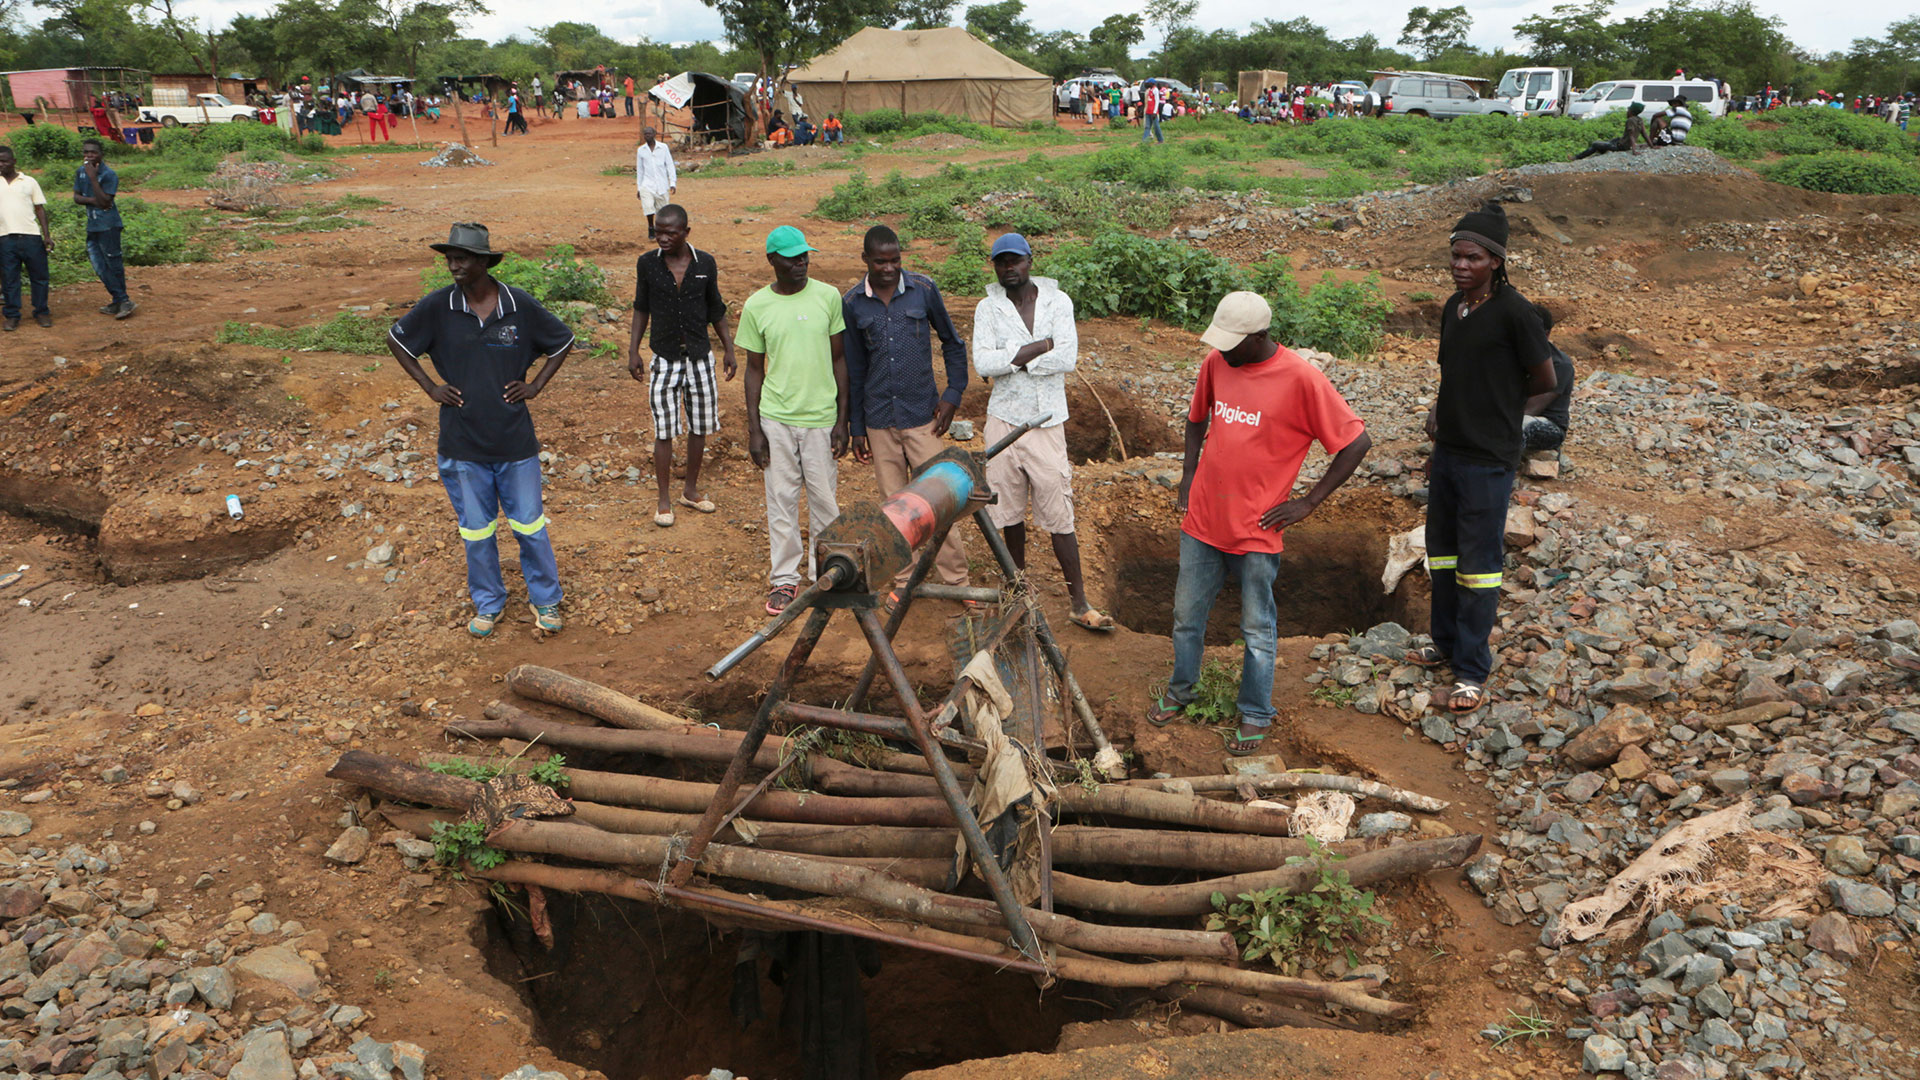 Las fuertes lluvias provocaron la muerte de unos 60 mineros ilegales en Zimbabwe (AP)